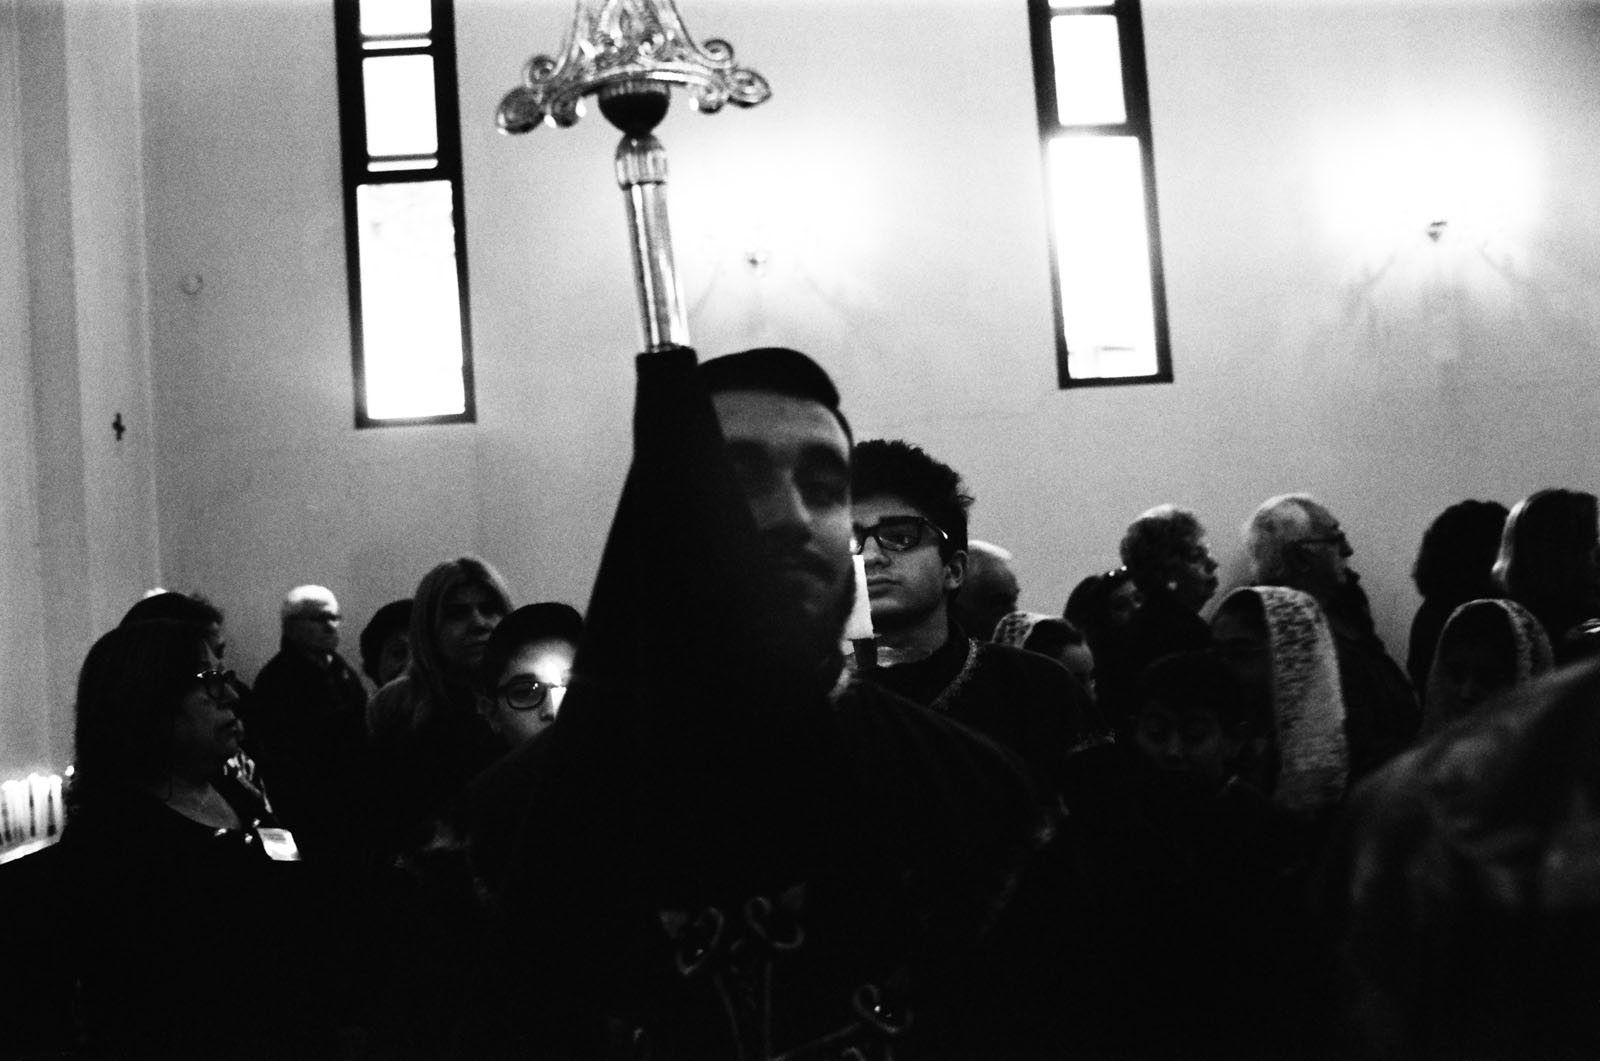 Procession de Pâques, église apostolique arménienne St. Sarkis, Nor Sis, 2018